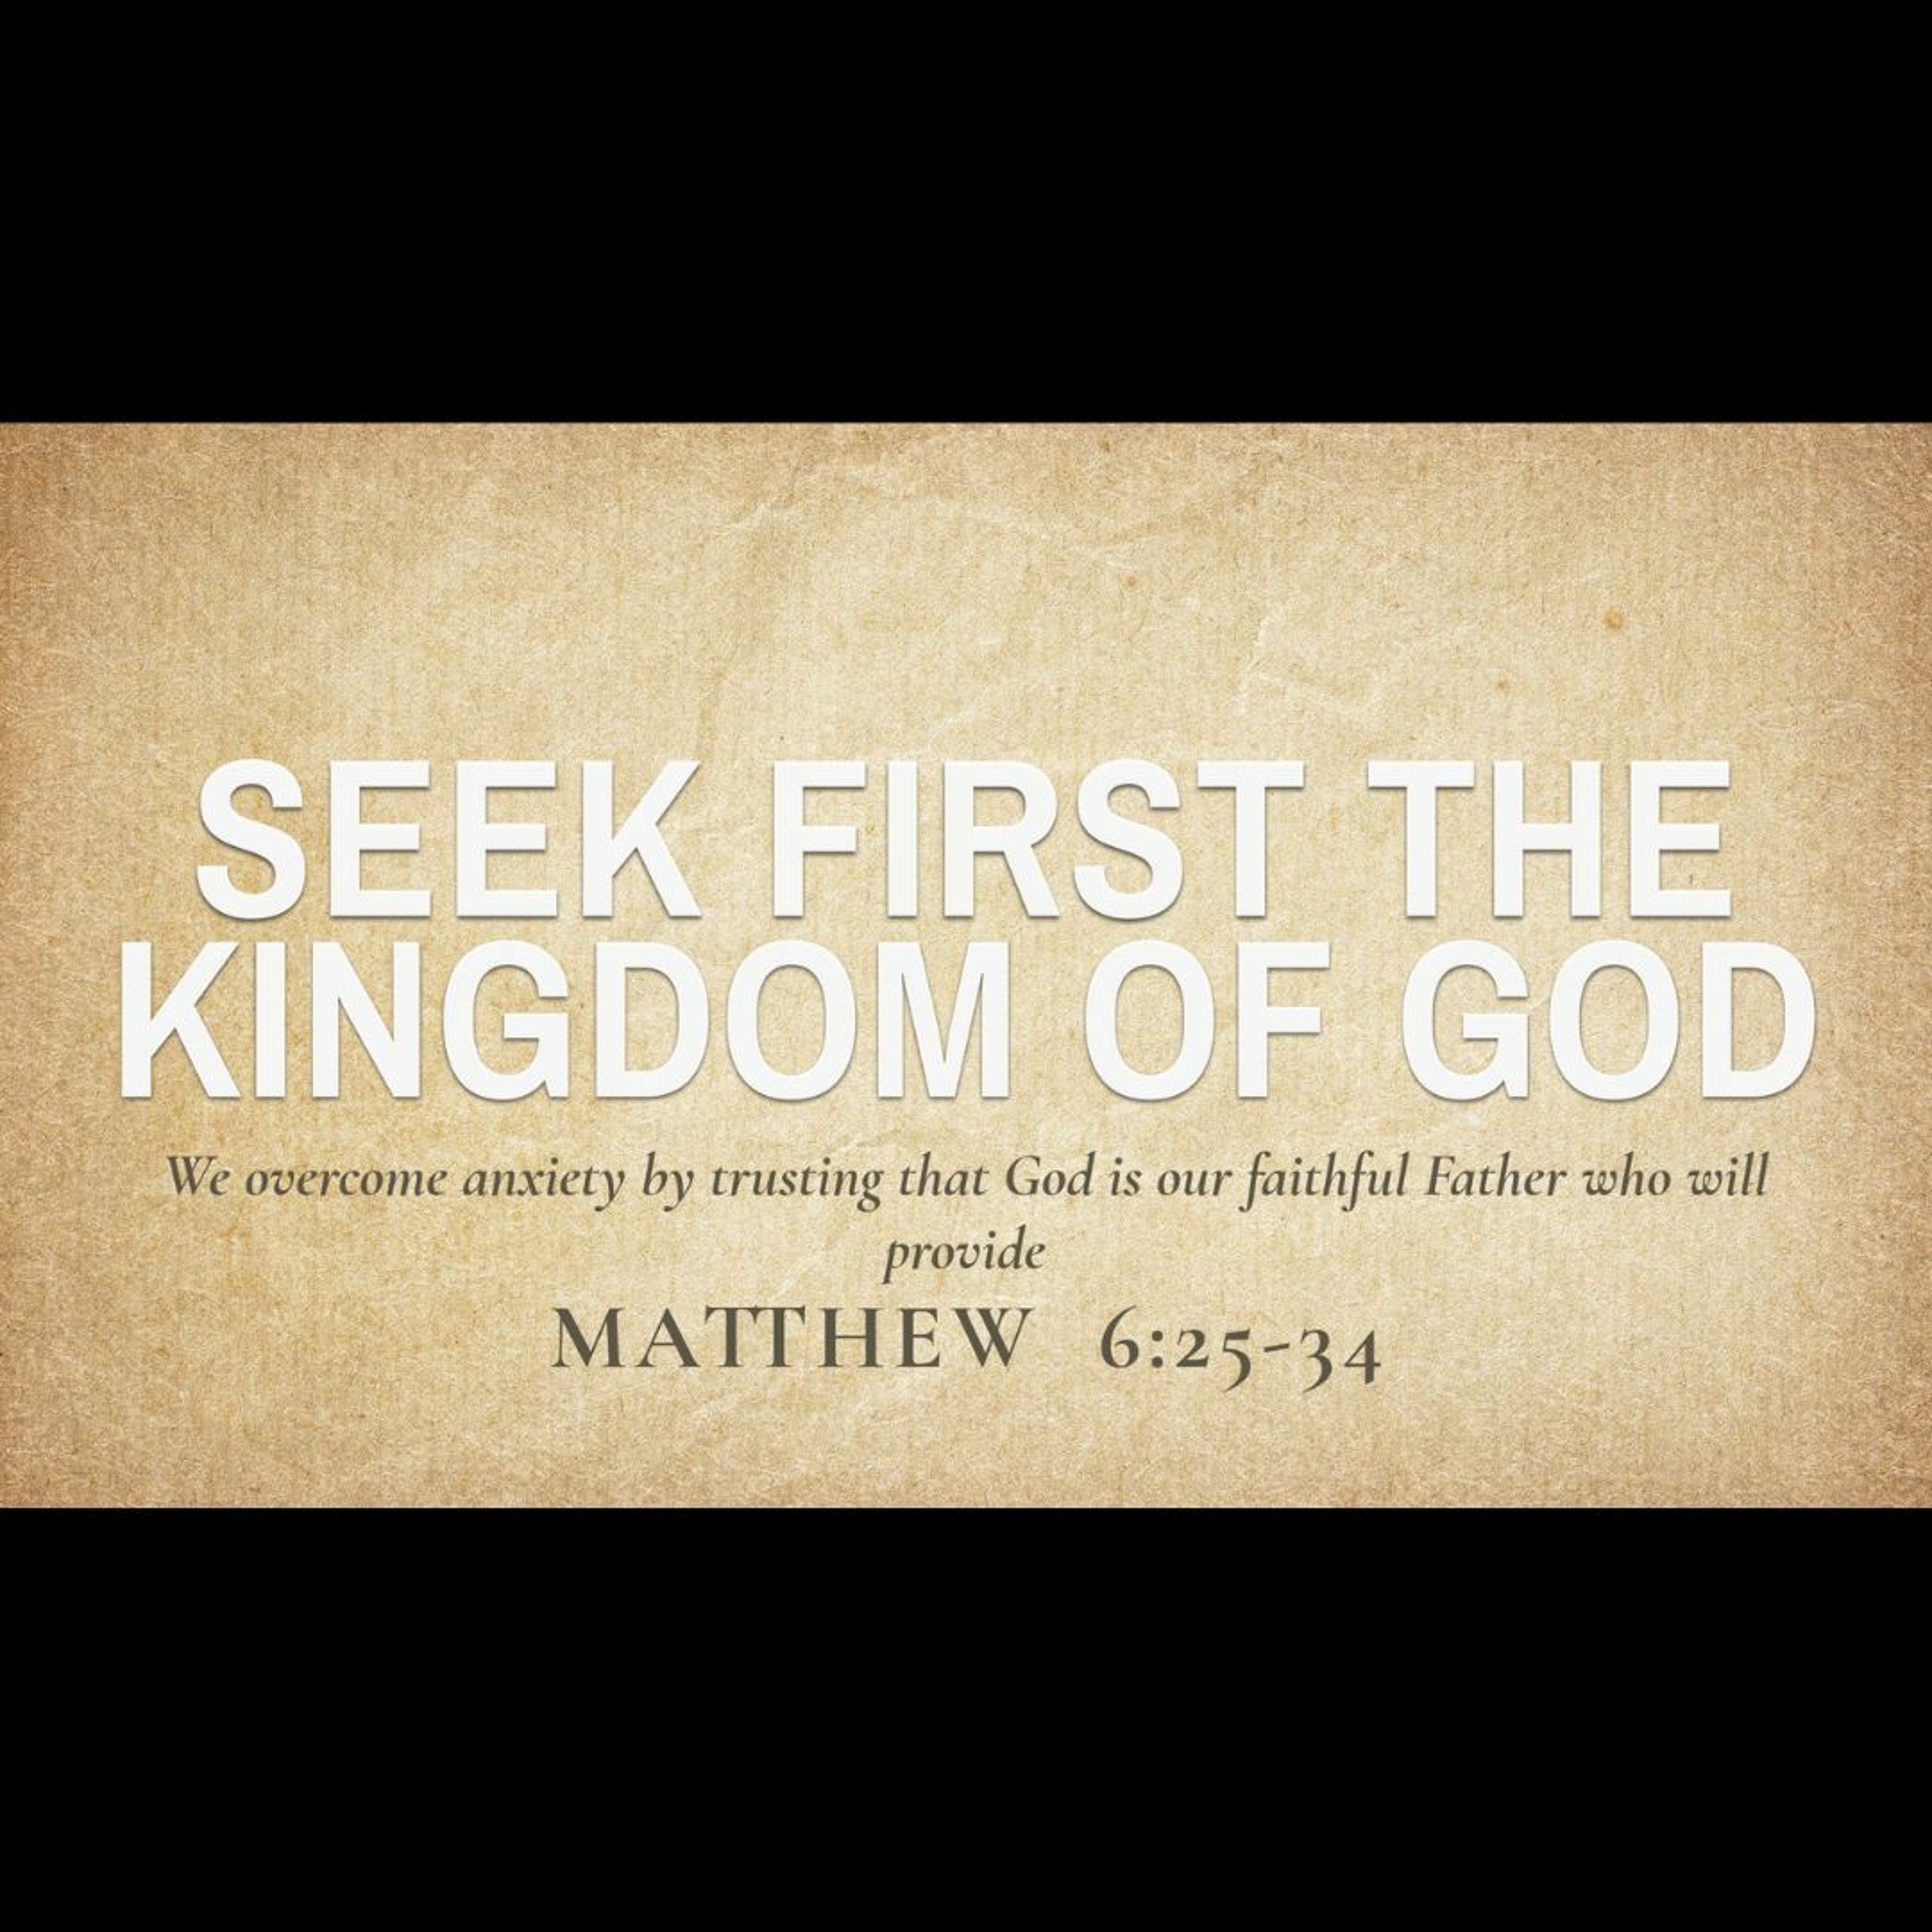 Seek First the Kingdom of God (Matthew 6:25-34)